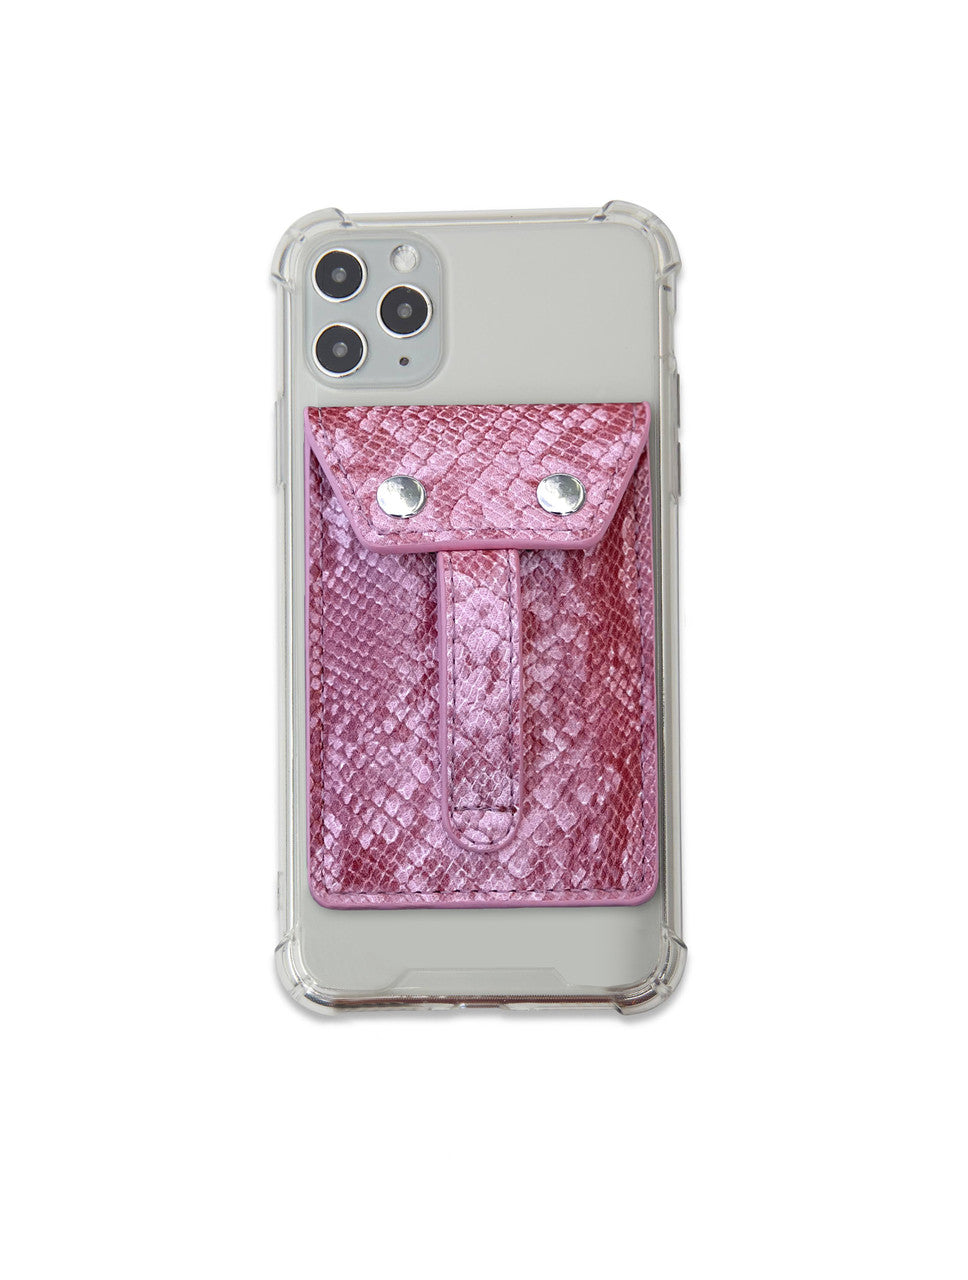 Phone Flipper Wallet in Pink Python